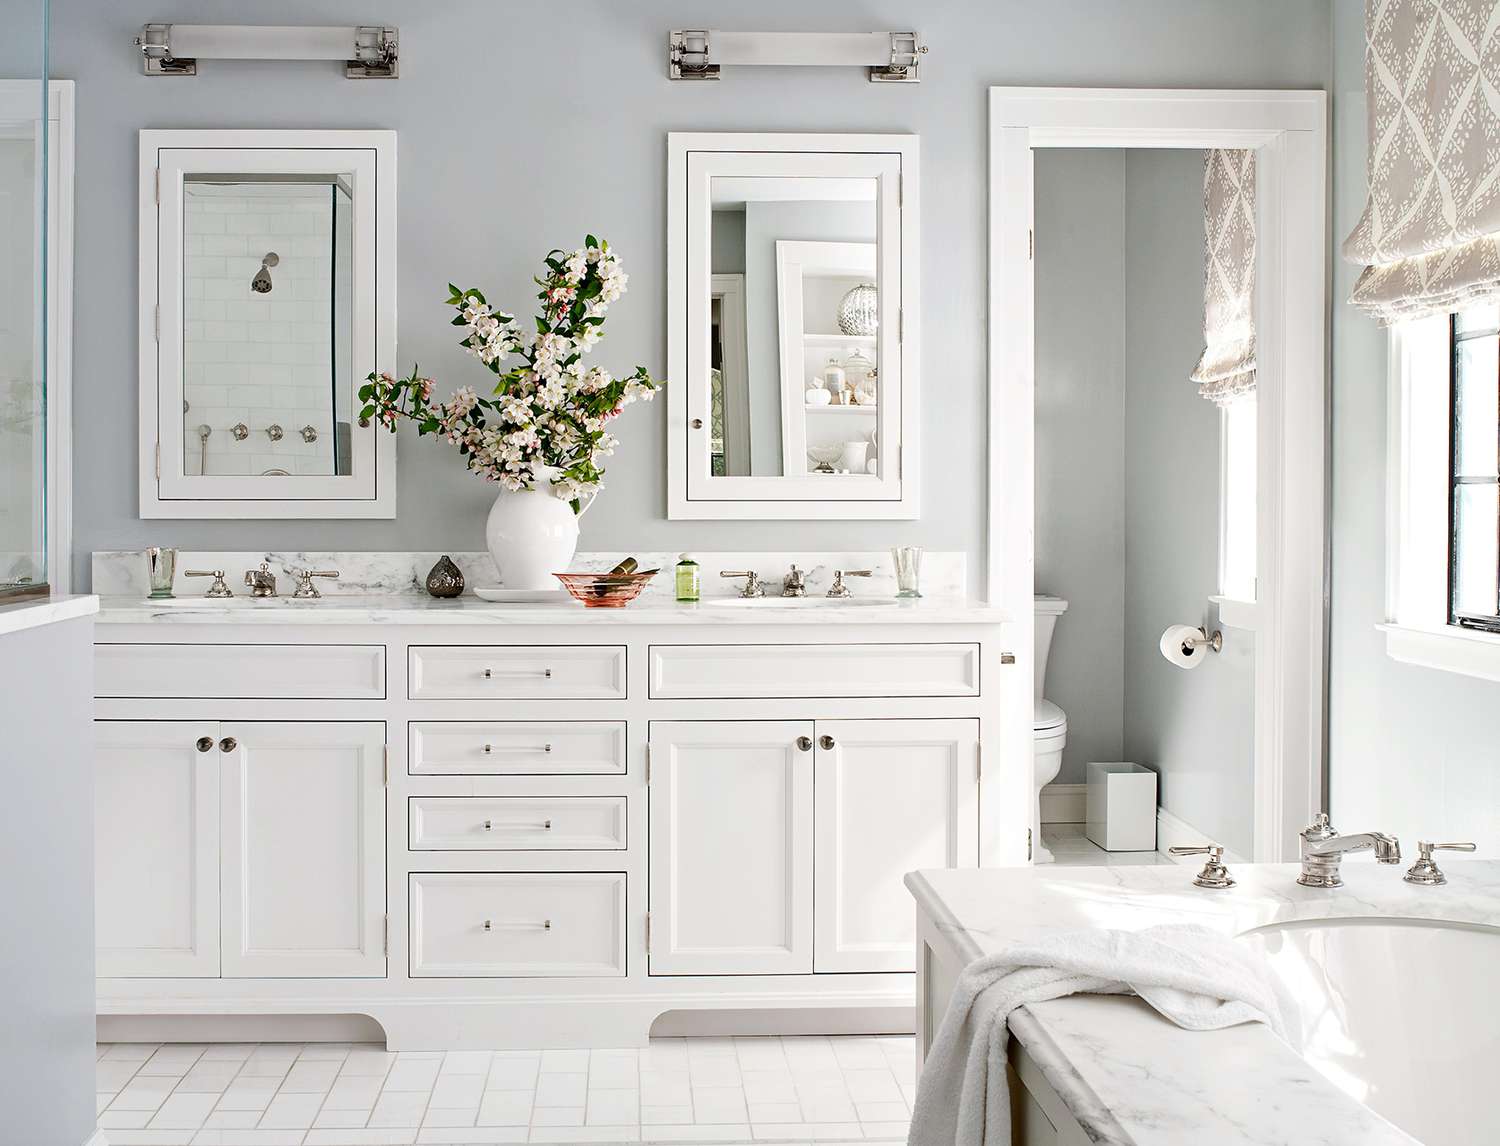 Solid White Glossy Ceramic 4 Piece Bathroom Sink Bath Accessory Set 